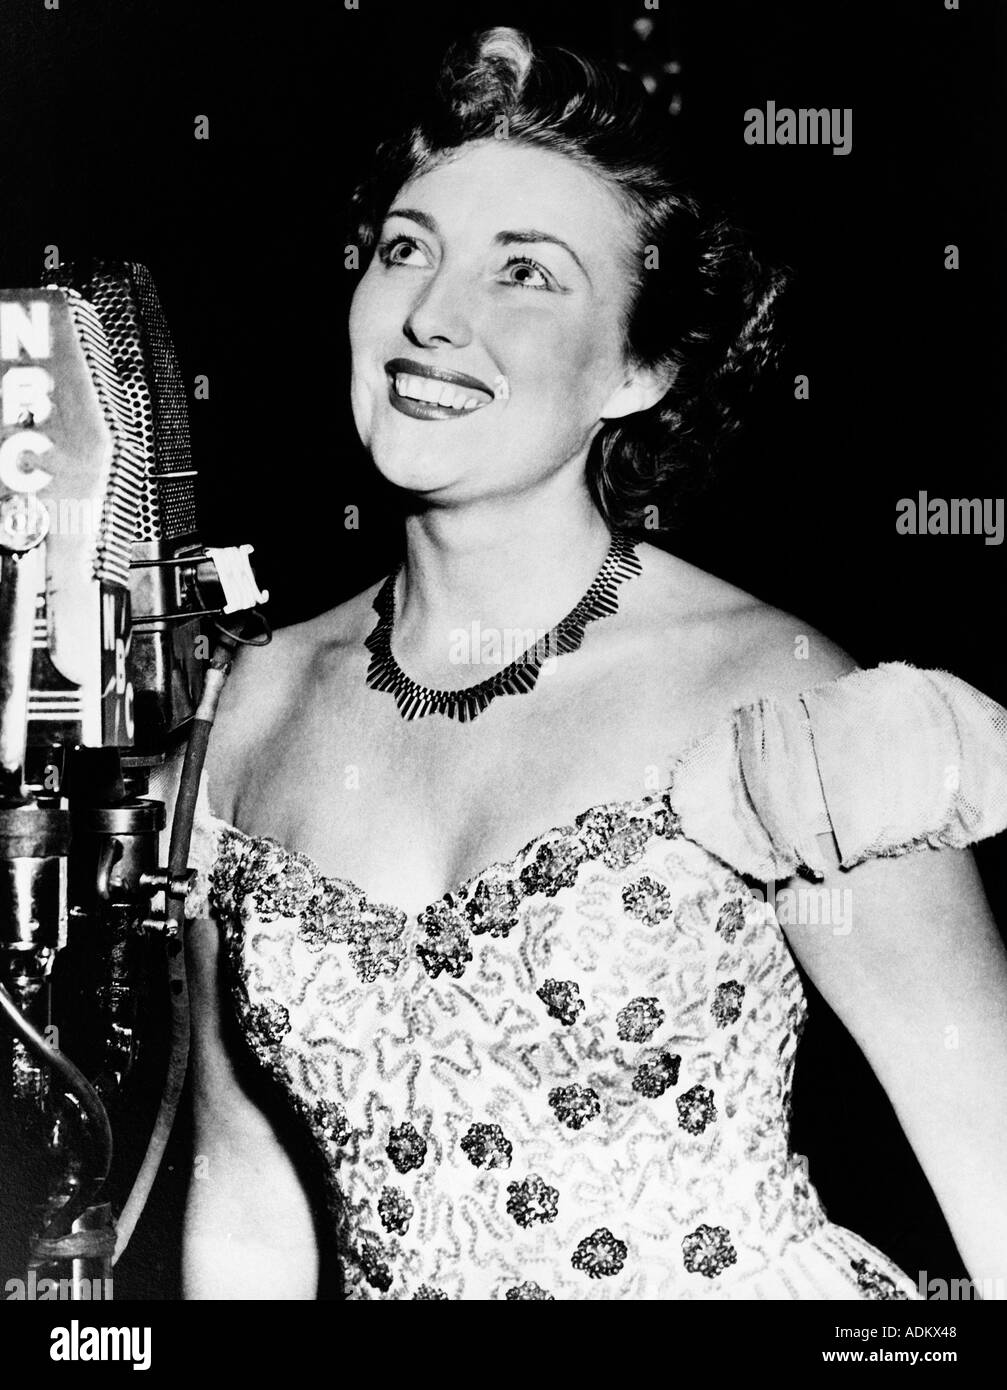 VERA LYNN chanteuse britannique né en 1917 ici en visite en Amérique latine dans les années 1950 Banque D'Images